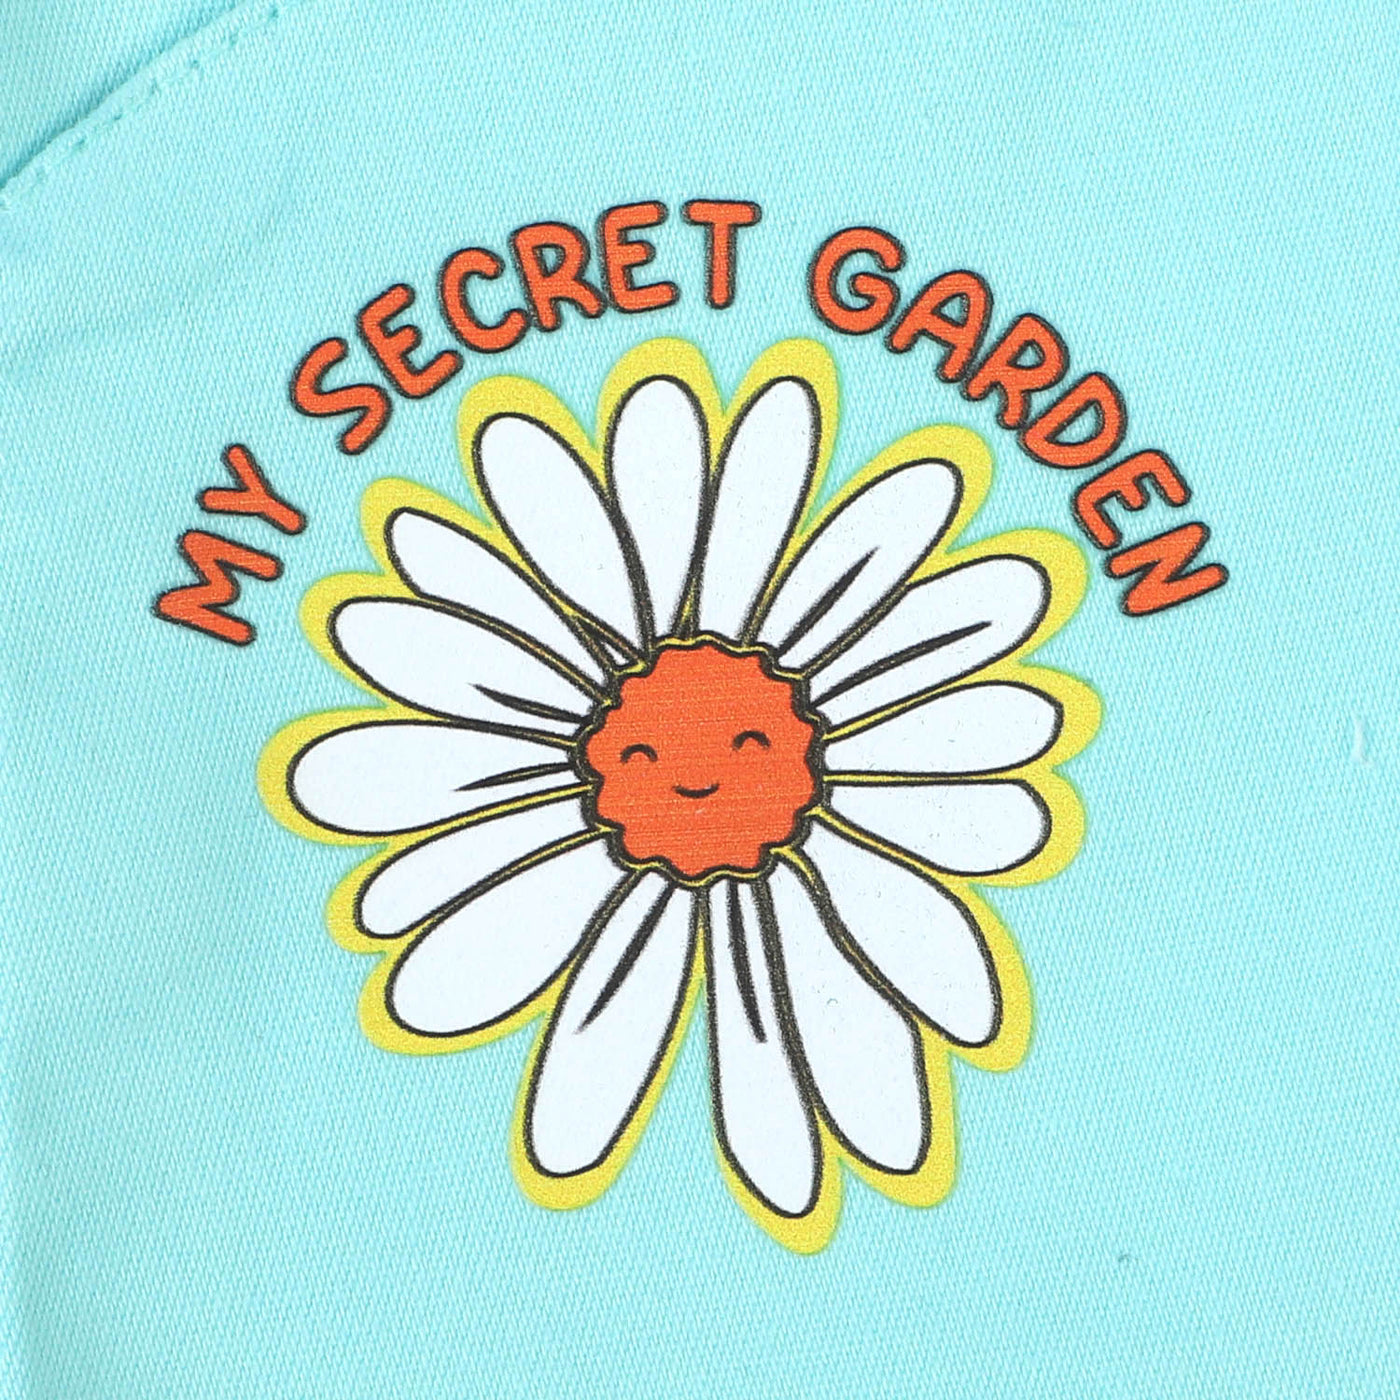 Infant Girls Cotton Short My Secret Garden - Aqua Green